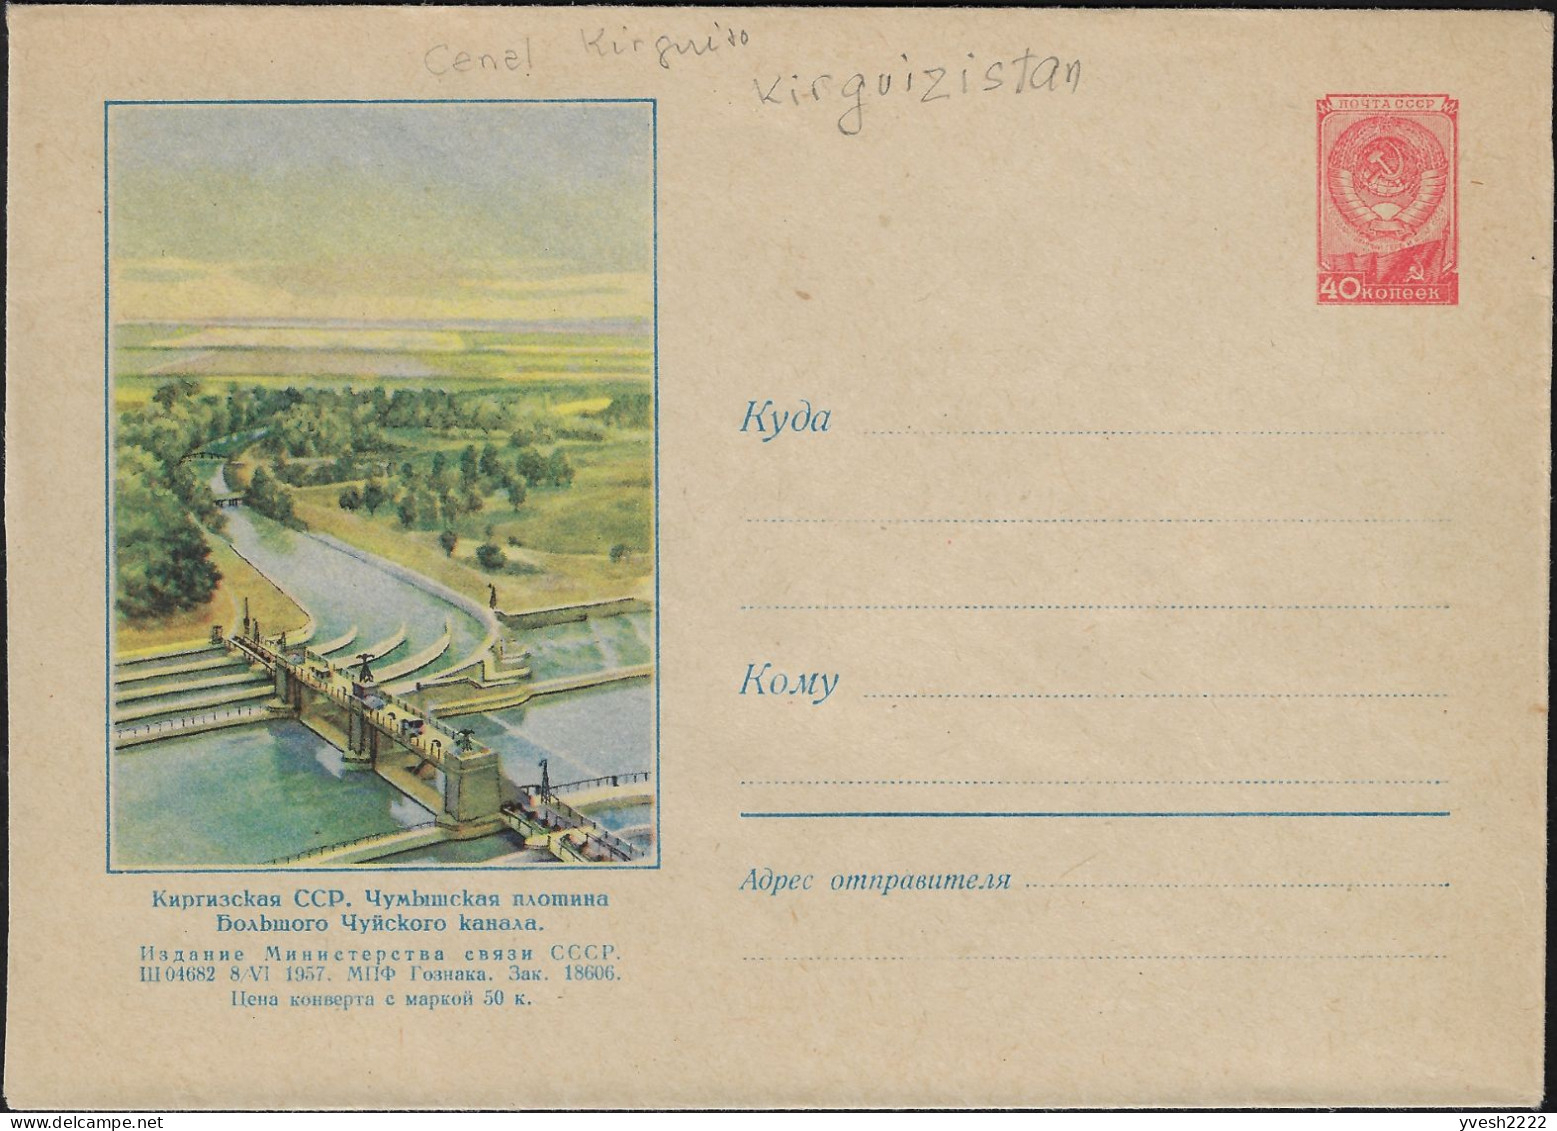 Kirghizstan, Occupation Soviétique. Entier Postal Illustré, Grand Canal De Chüy Et Son Barrage Chumysh - Wasser